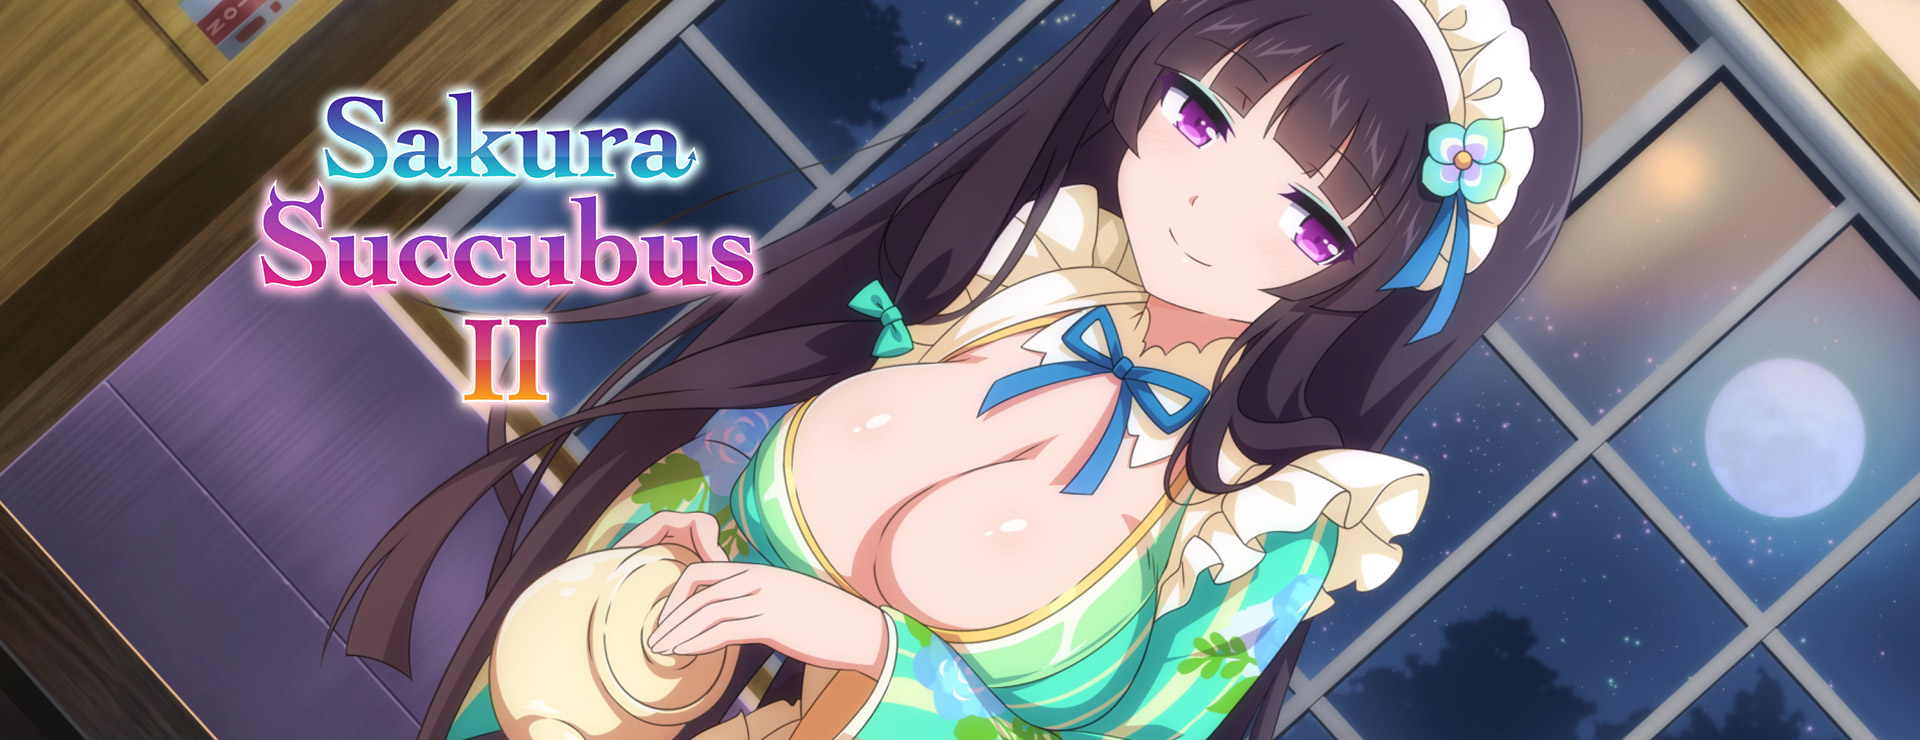 Sakura Succubus 2 - Powieść wizualna Gra